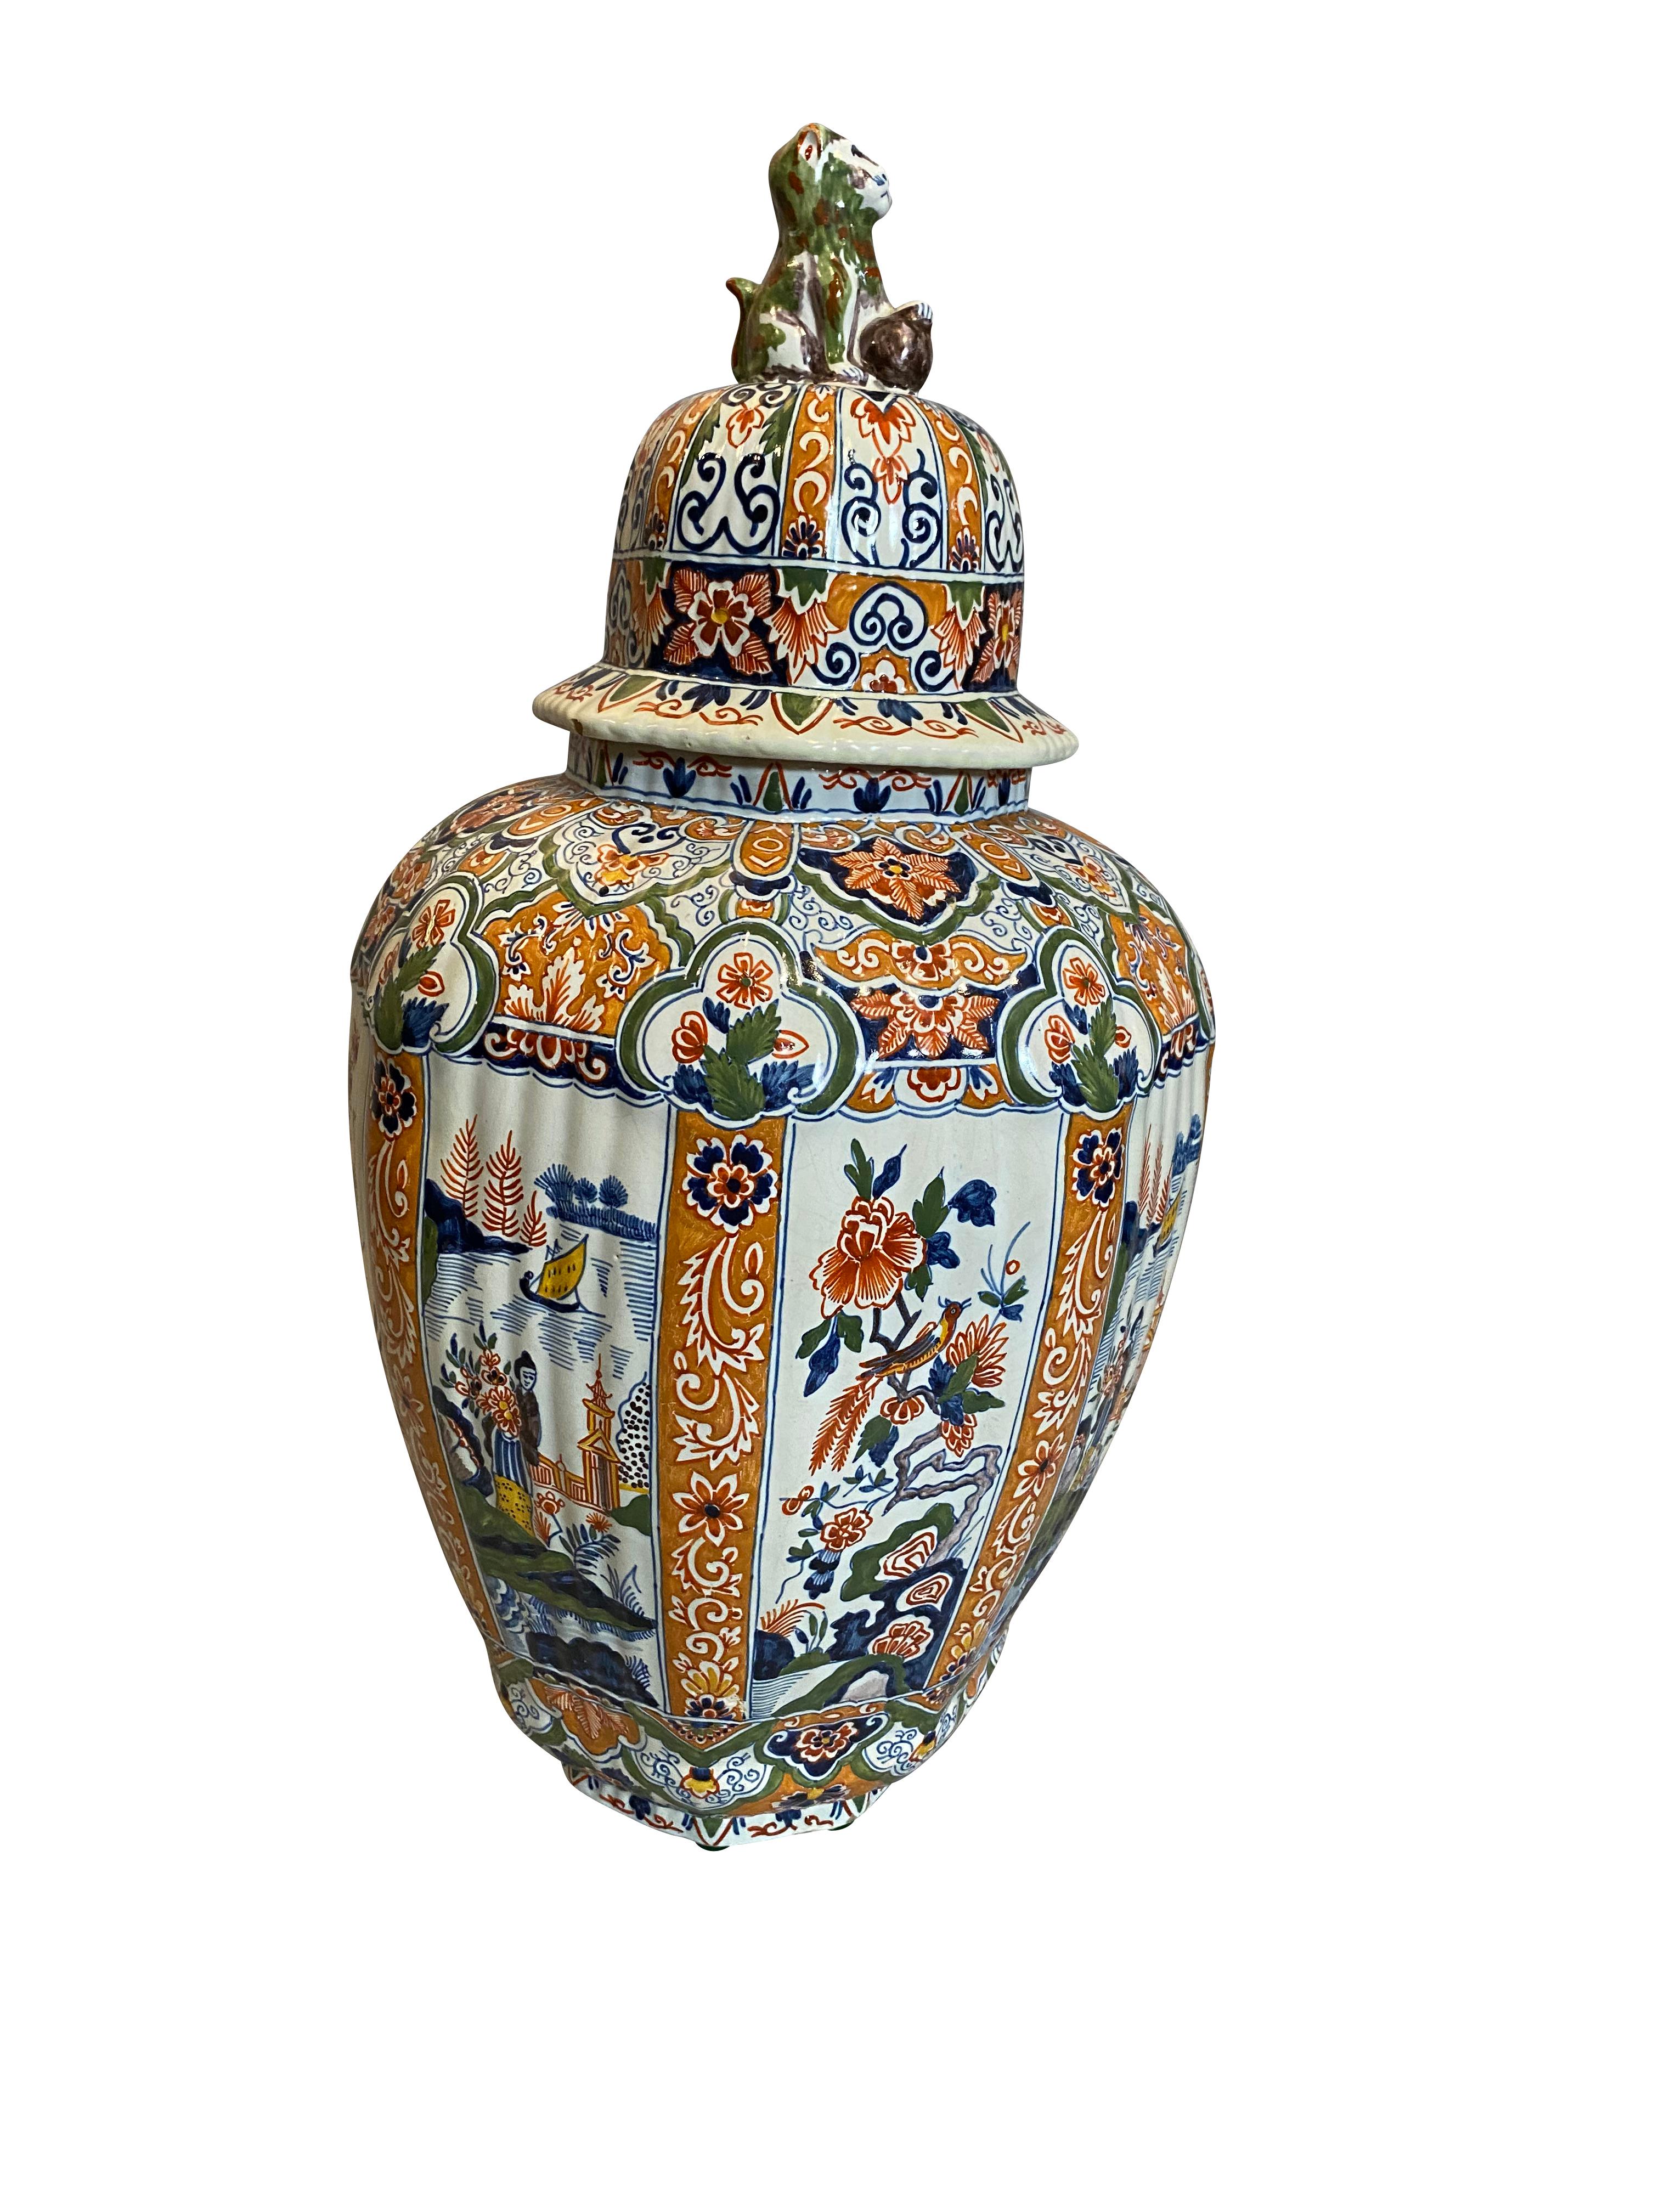 Auf dem gewölbten, gerippten Deckel befindet sich eine Vase in Balusterform mit polychromem Dekor in Form eines Löwenkopfes.